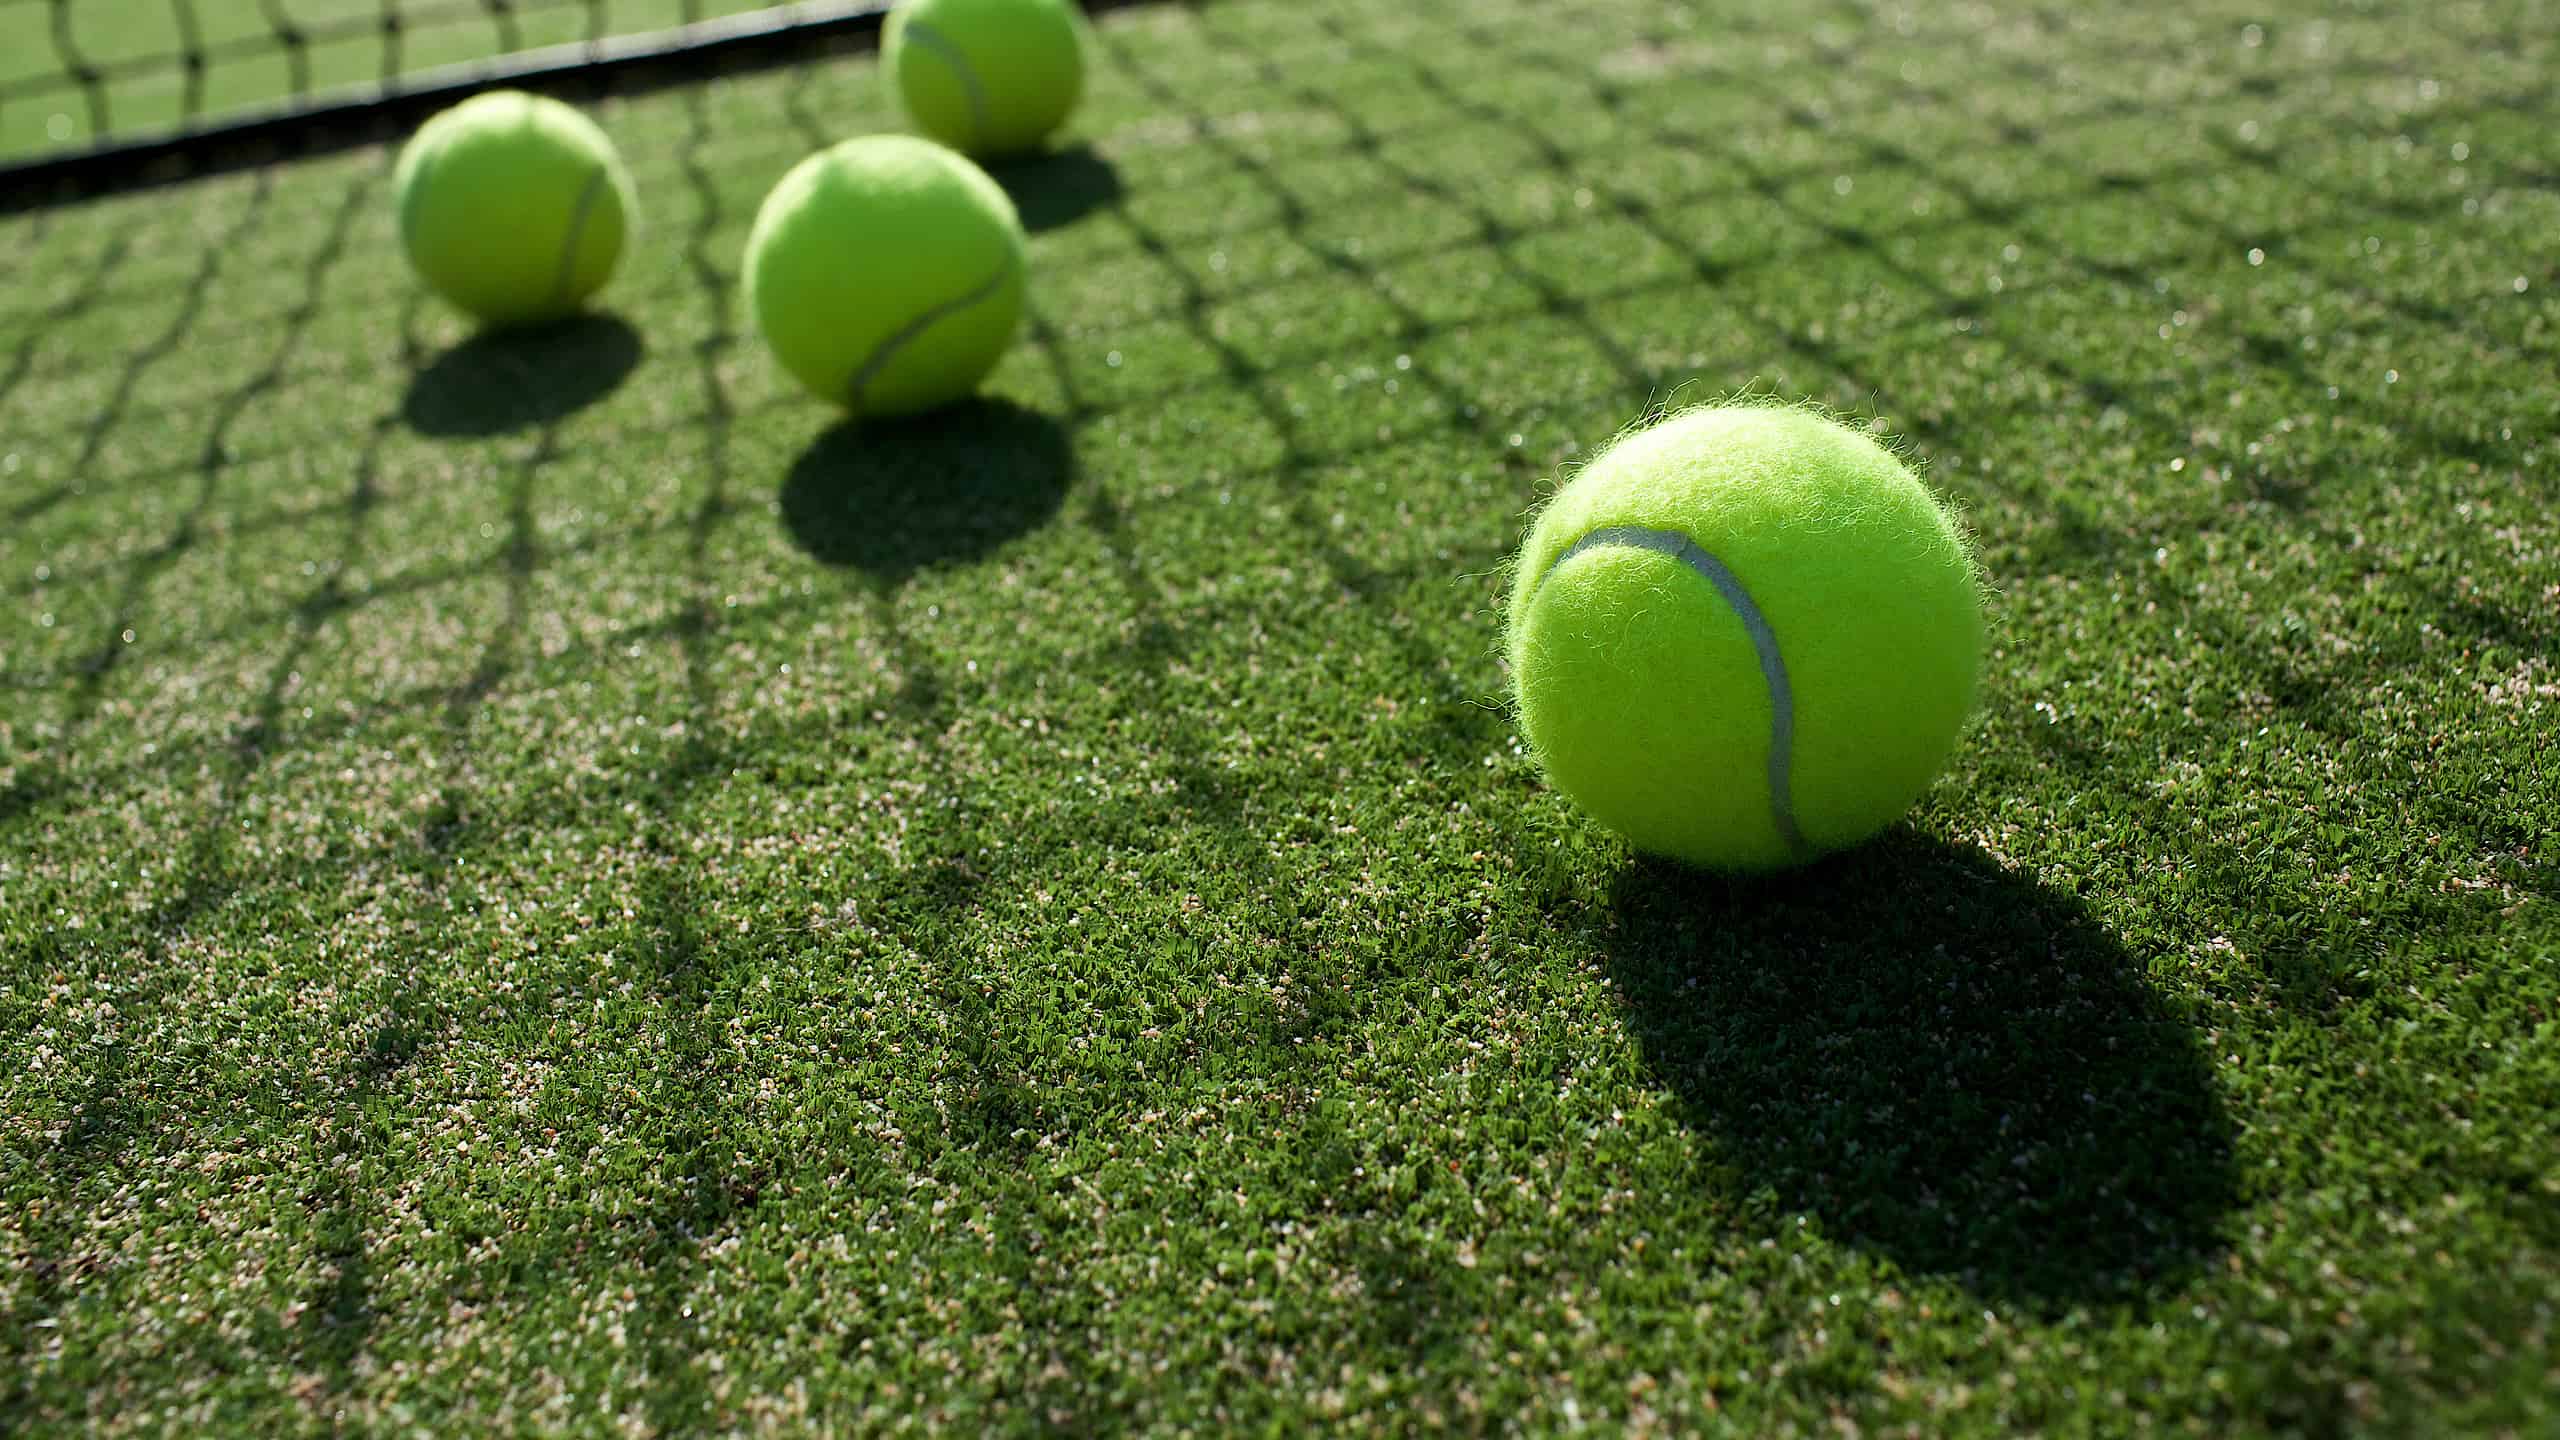 quattro palline da tennis luminose sono visibili su un campo in erba verde.  La rete è visibile verso il retro della cornice.  Il sole splende attraverso il nido proiettando un'ombra netta sull'erba verde e sulle palline gialle.